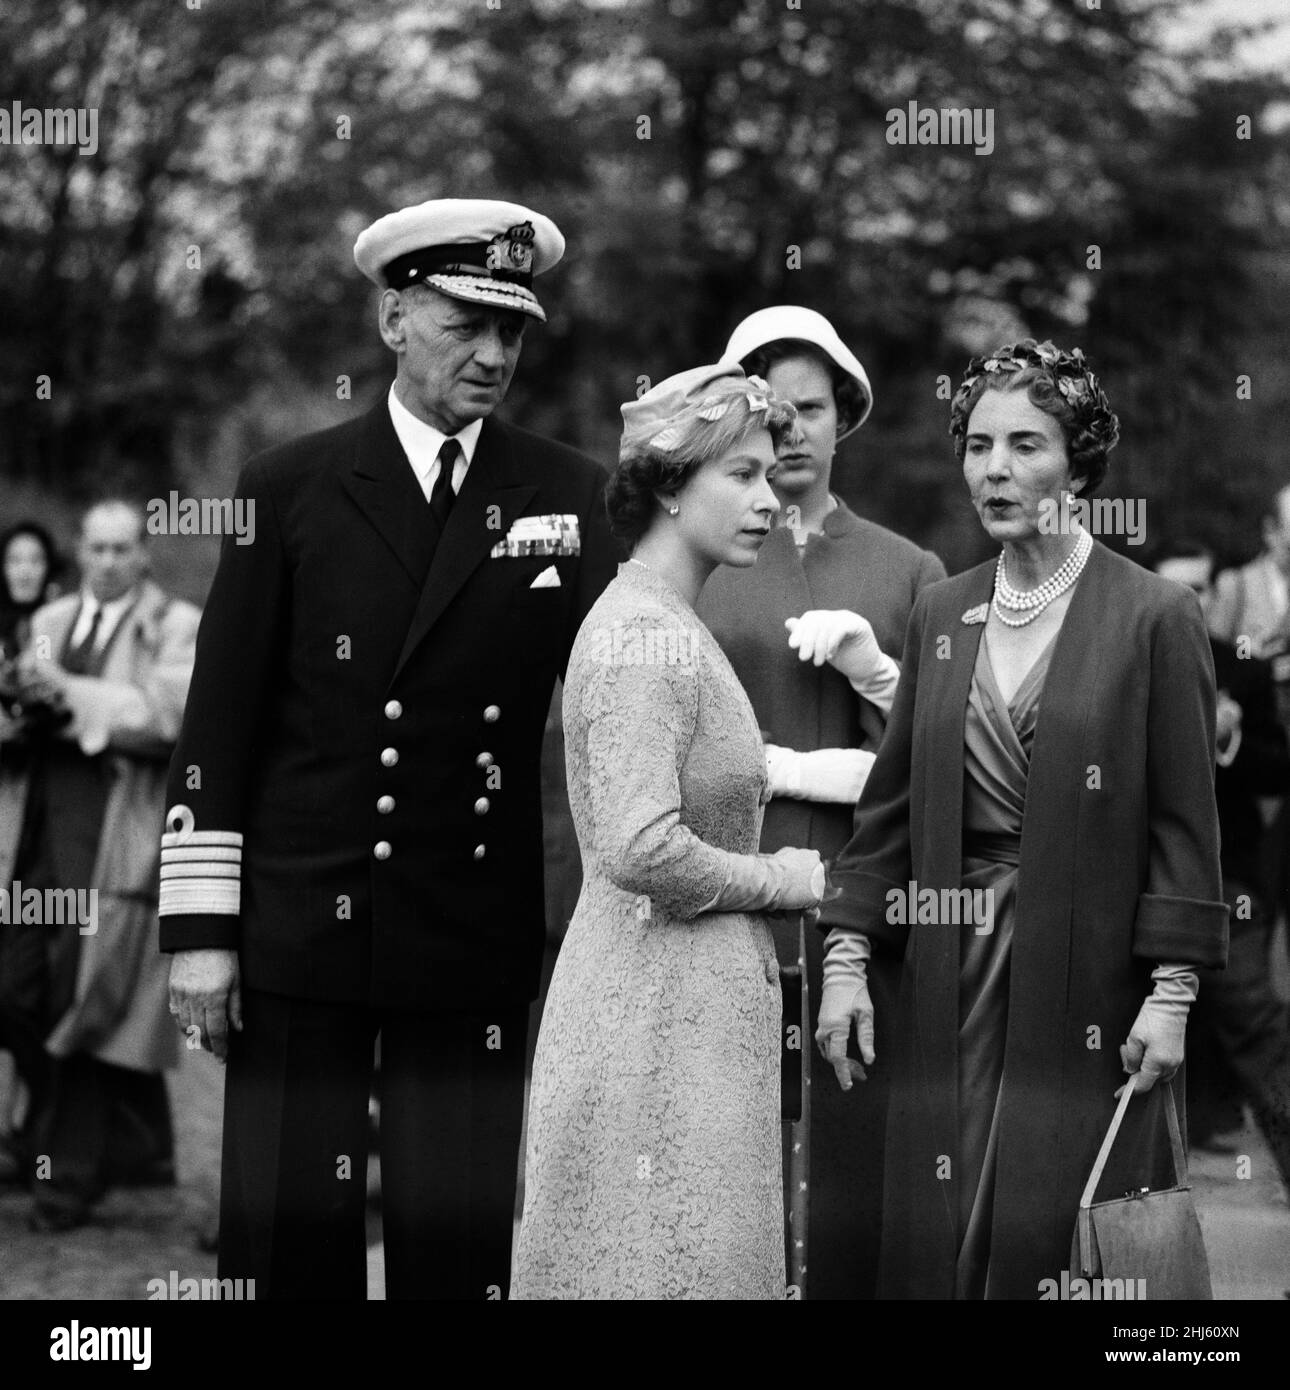 Königin Elizabeth II. Und Prinz Philip, Herzog von Edinburgh, besuchen Dänemark. Bei einem Besuch des Gedenkfriedhofs der Widerstandsbewegung sind König Frederik IX. Von Dänemark, Königin Elisabeth II., die dänische Prinzessin Margrethe und Königin Ingrid zu sehen. 23rd Mai 1957. Stockfoto